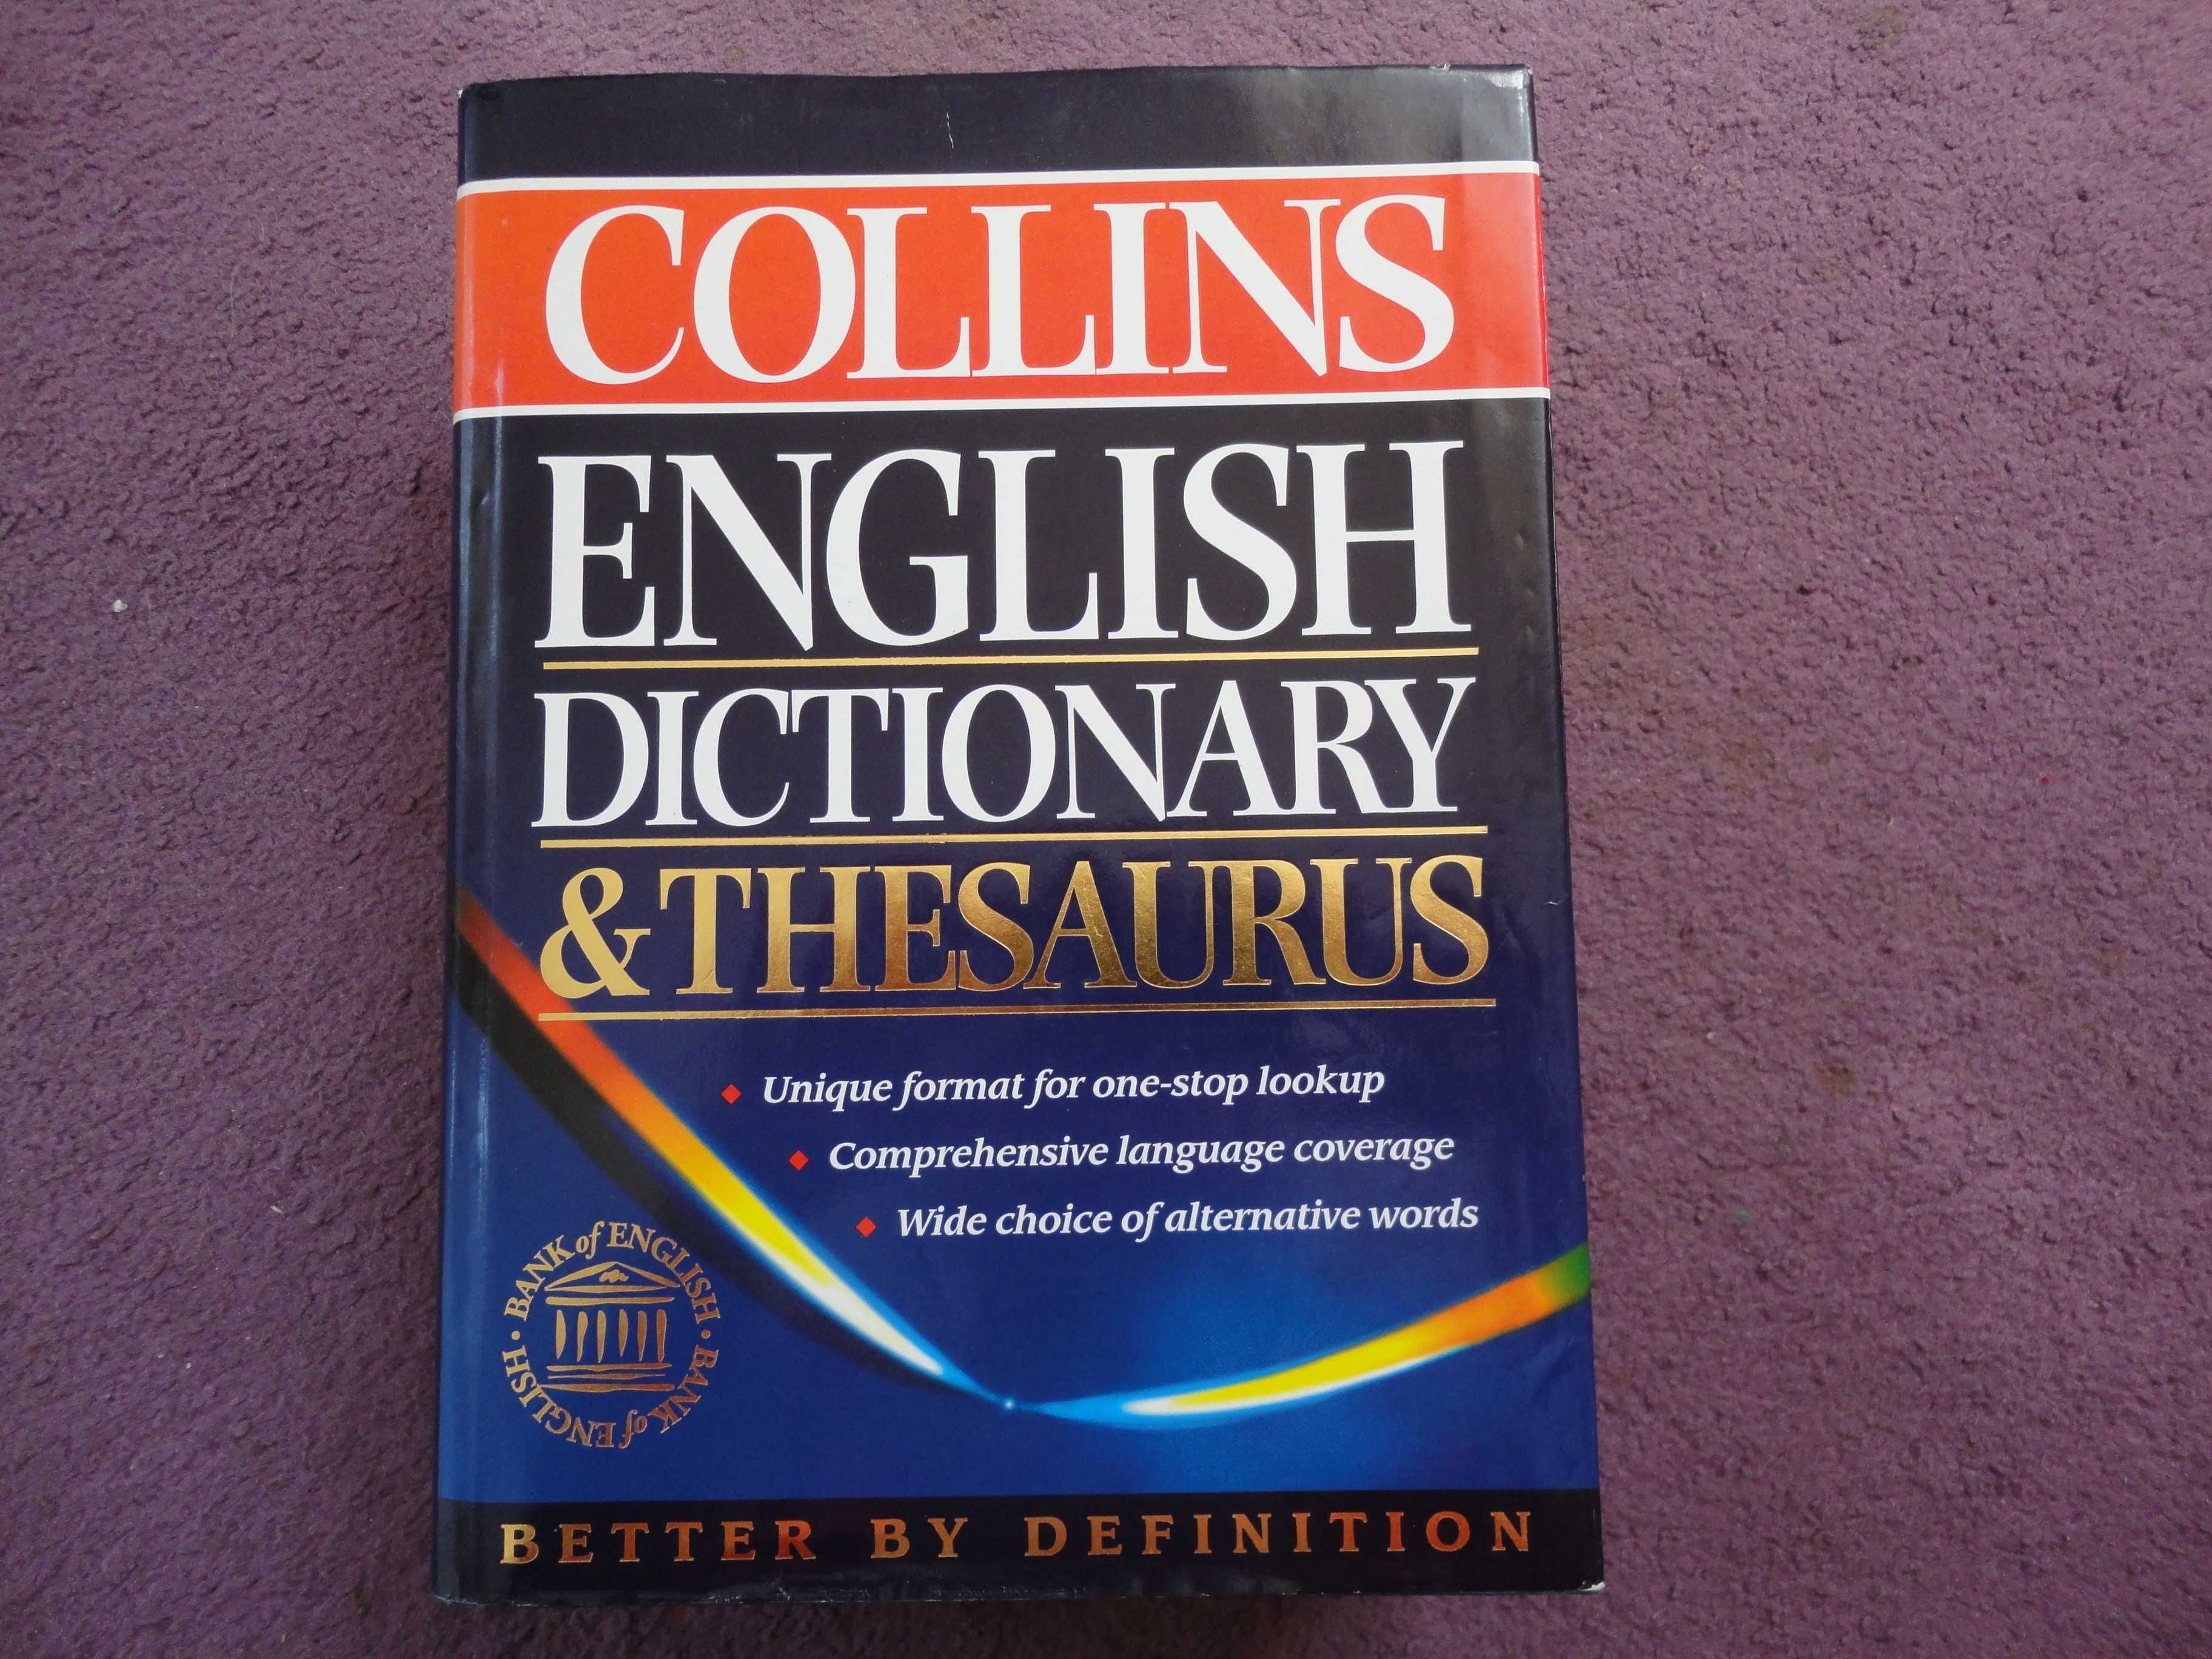 Collins English Dictionary & Thesaurus słownik języka angielskiego